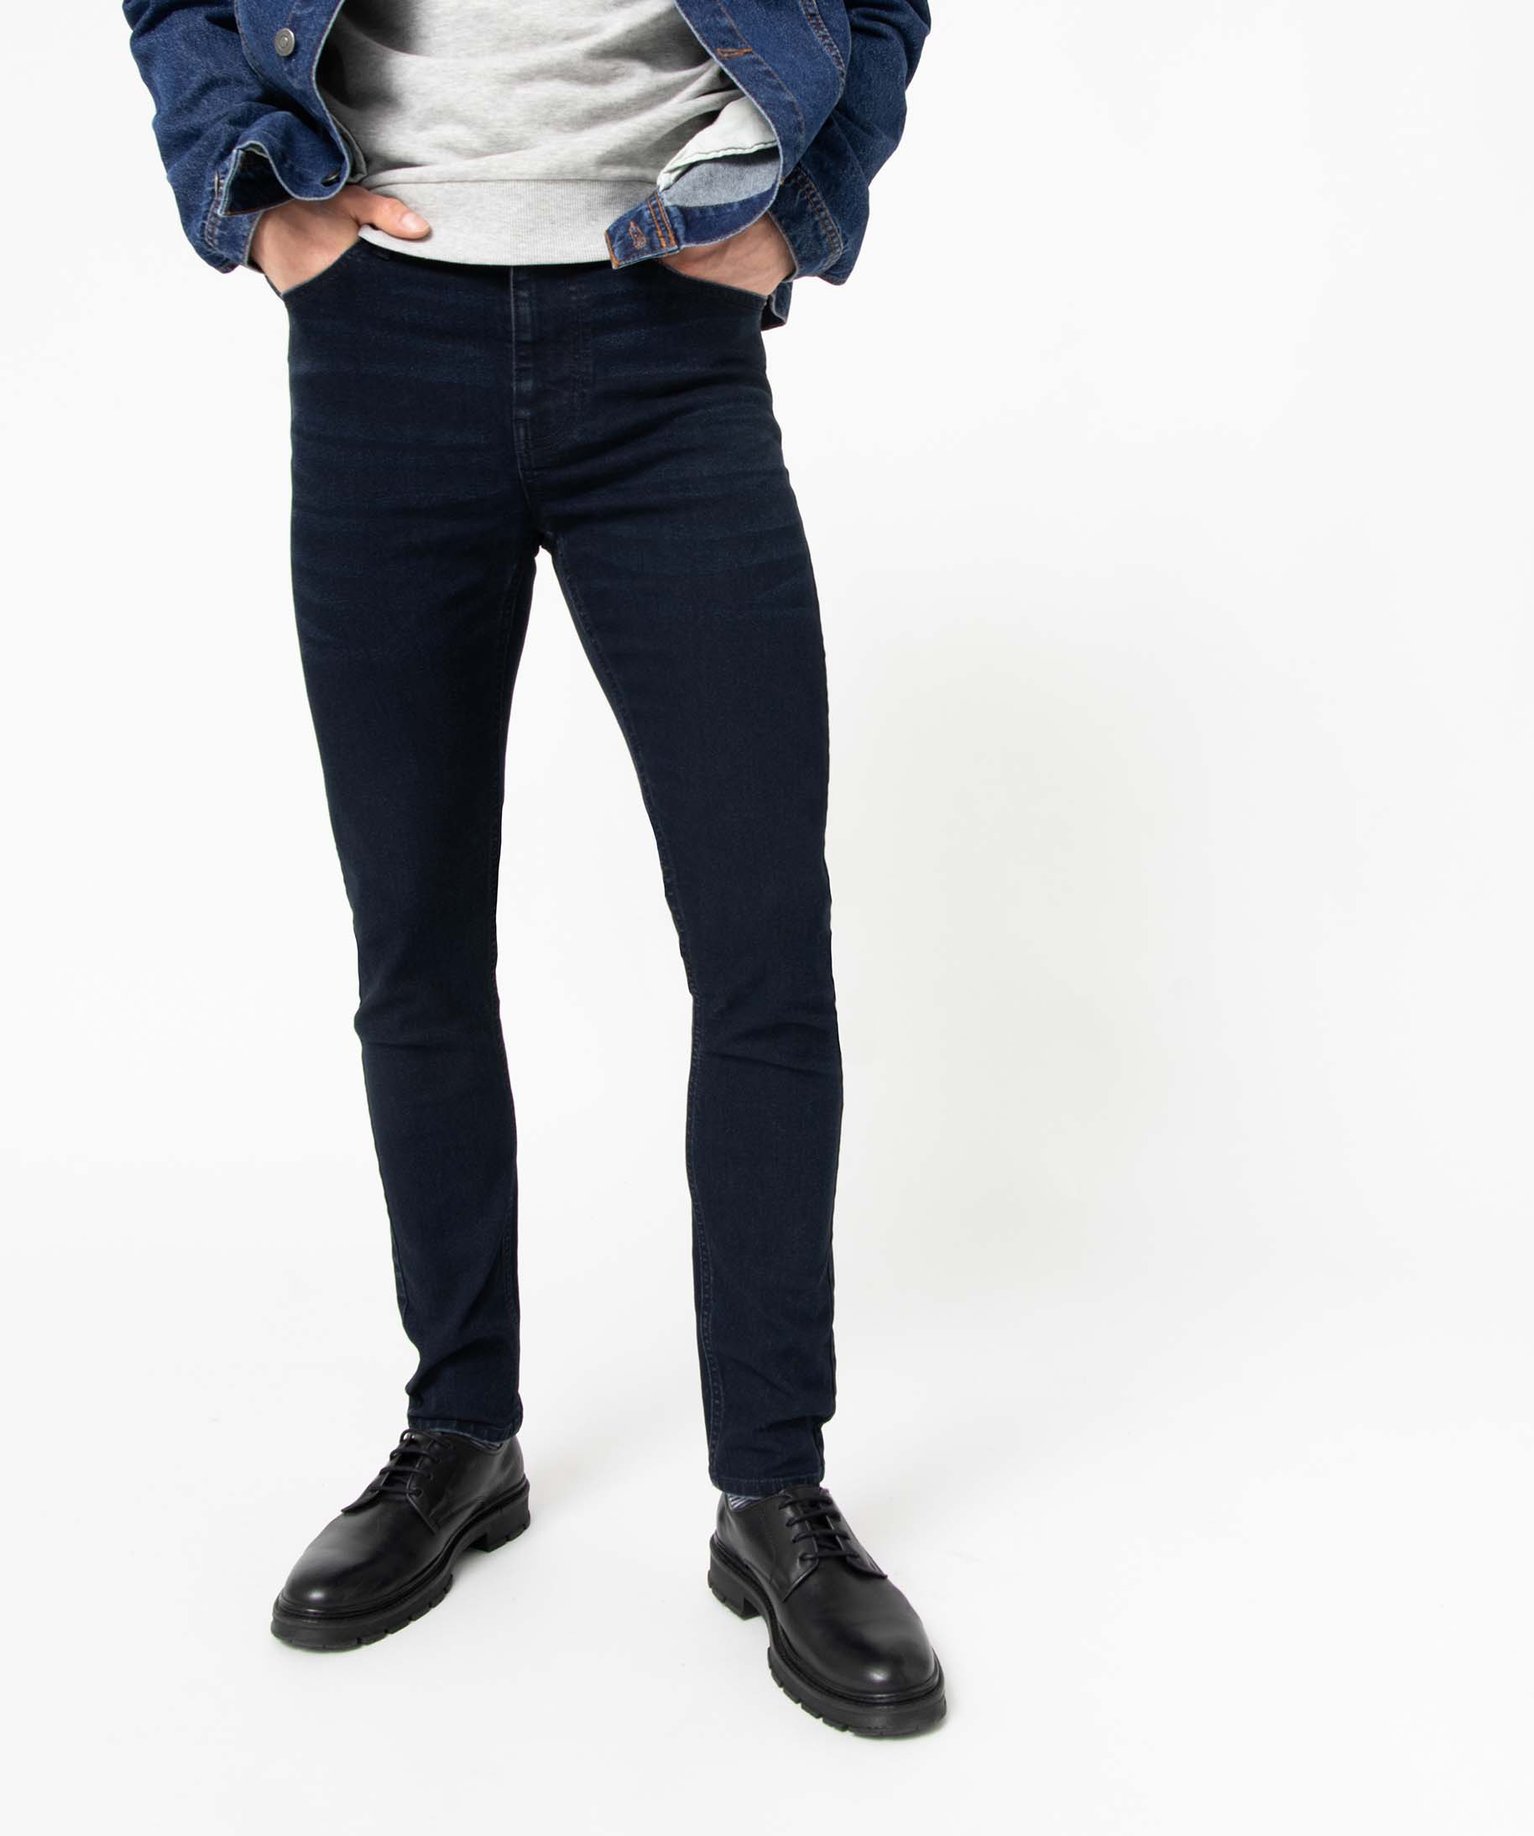 jean homme skinny taille haute en coton stretch bleu